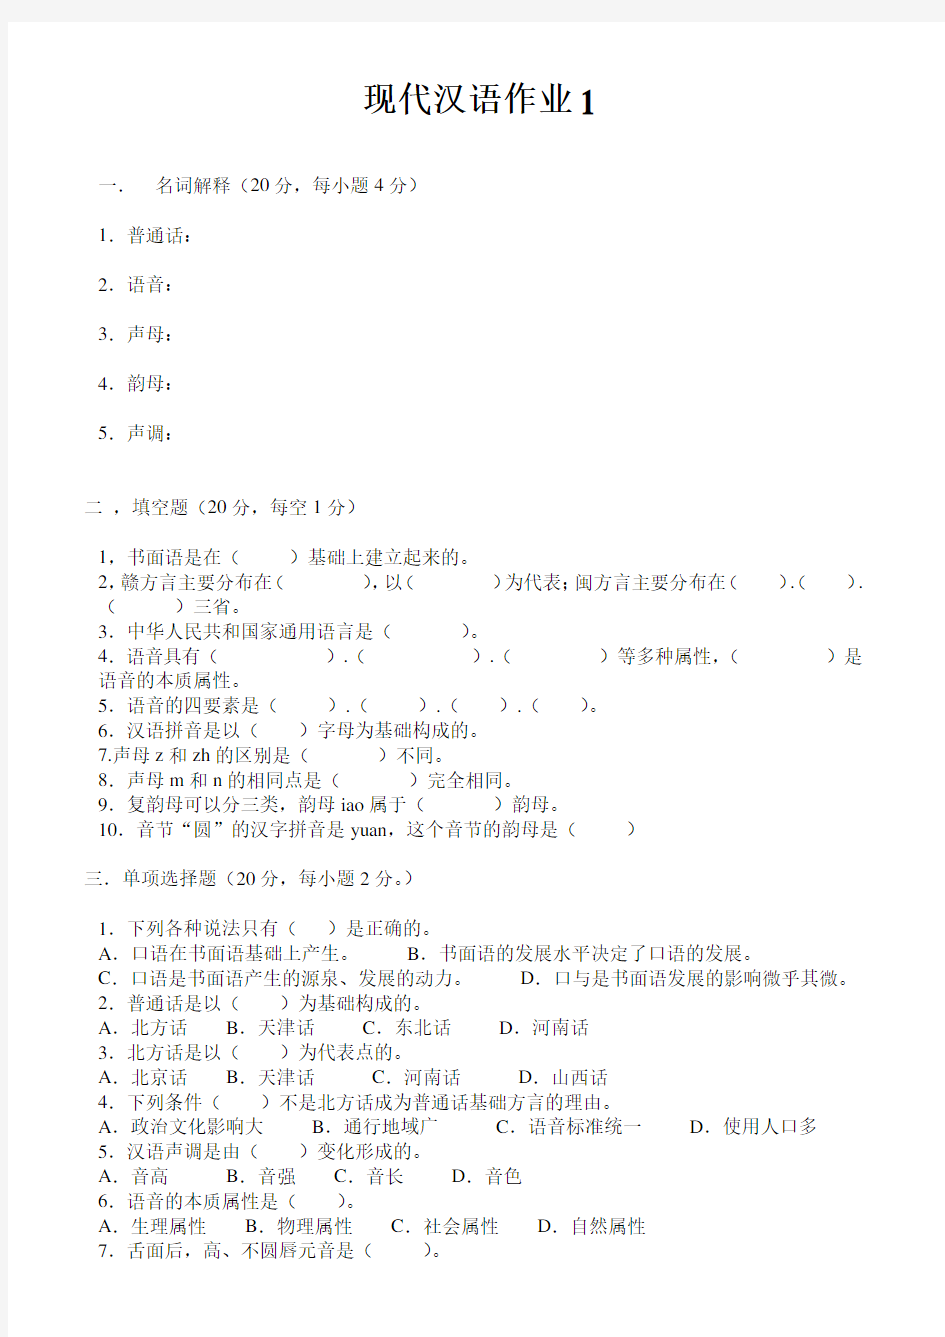 《现代汉语1》作业形考网考形成性考核册-国家开放大学电大